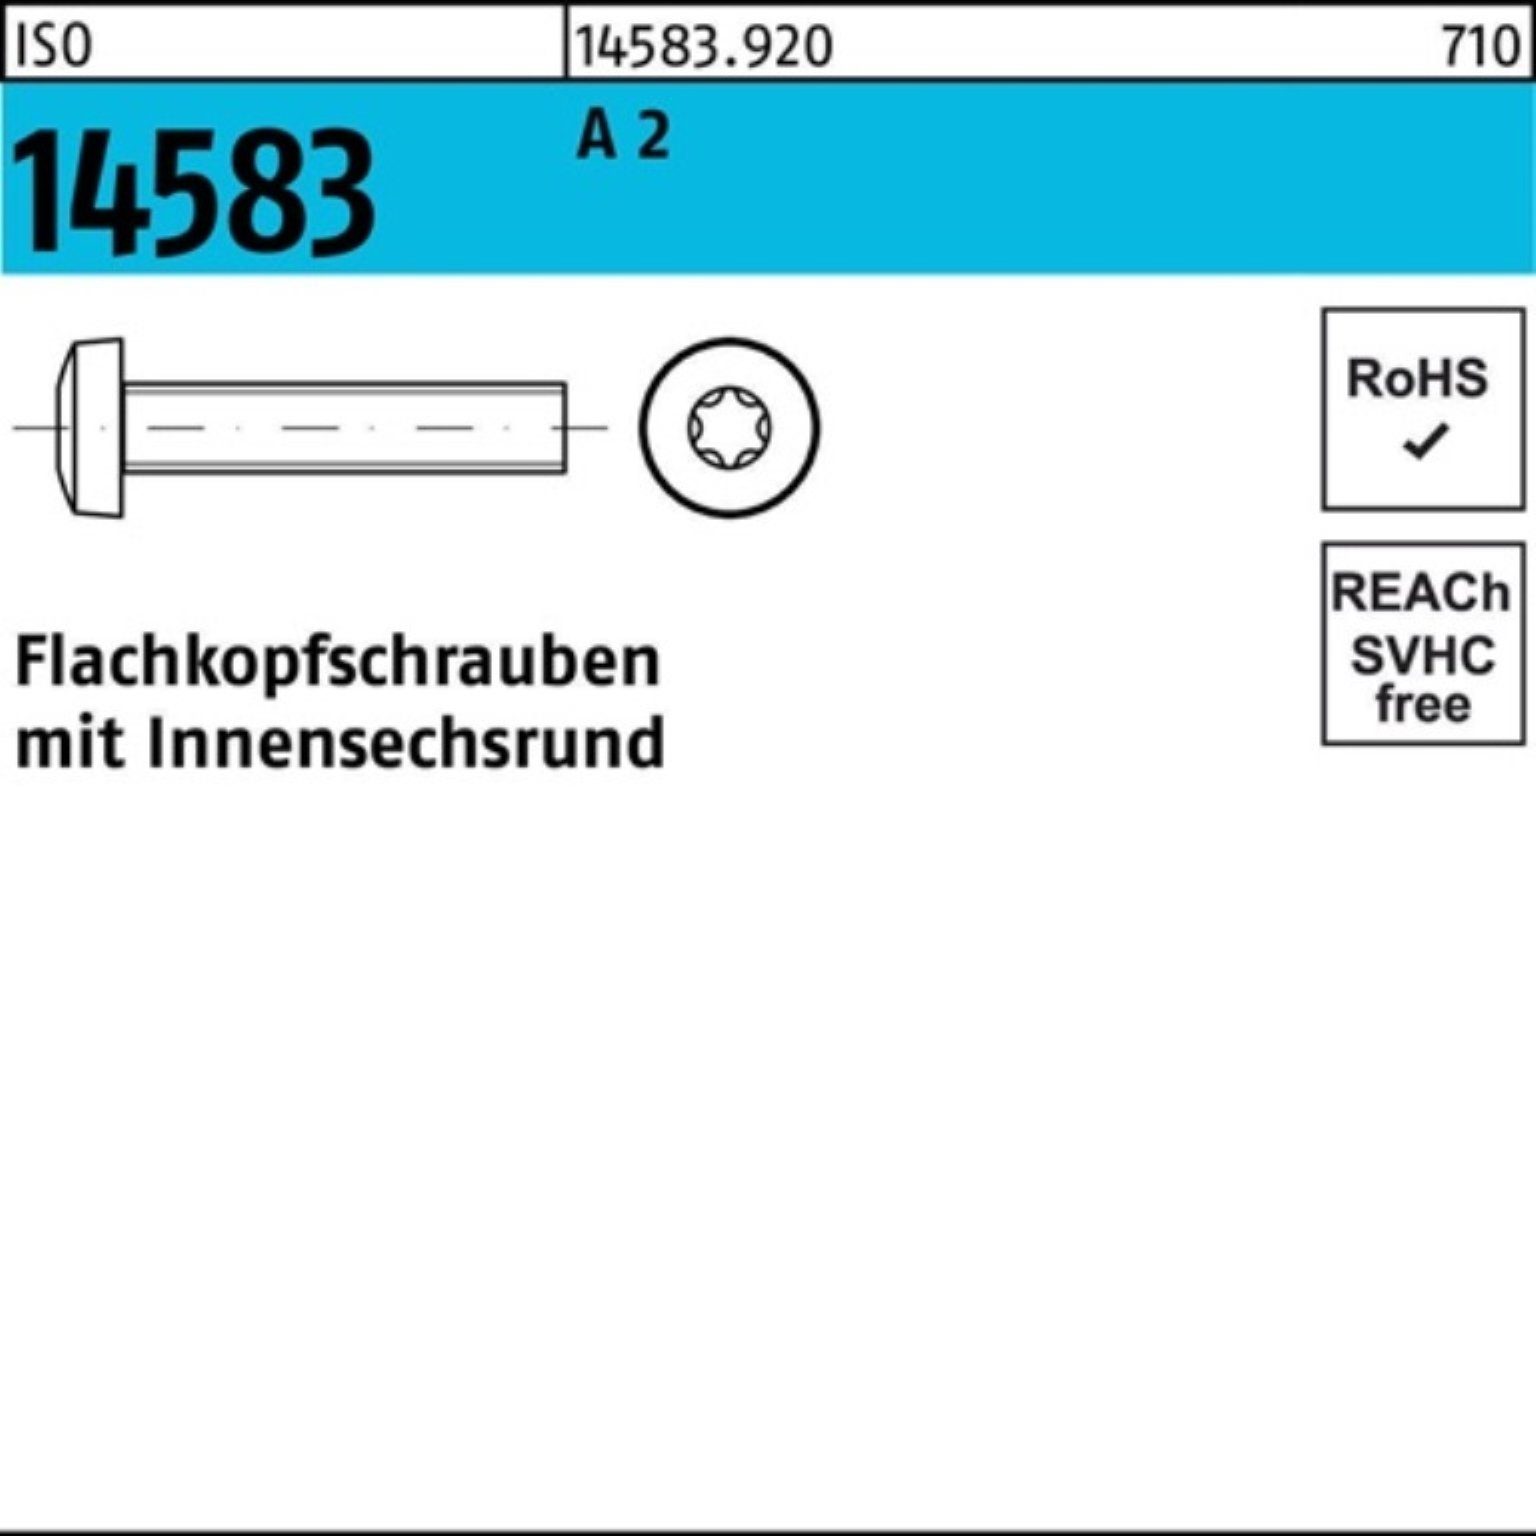 Reyher Schraube 1000er Pack Flachkopfschraube 1000 Stück 2 14583 ISO ISO M3x A ISR 12